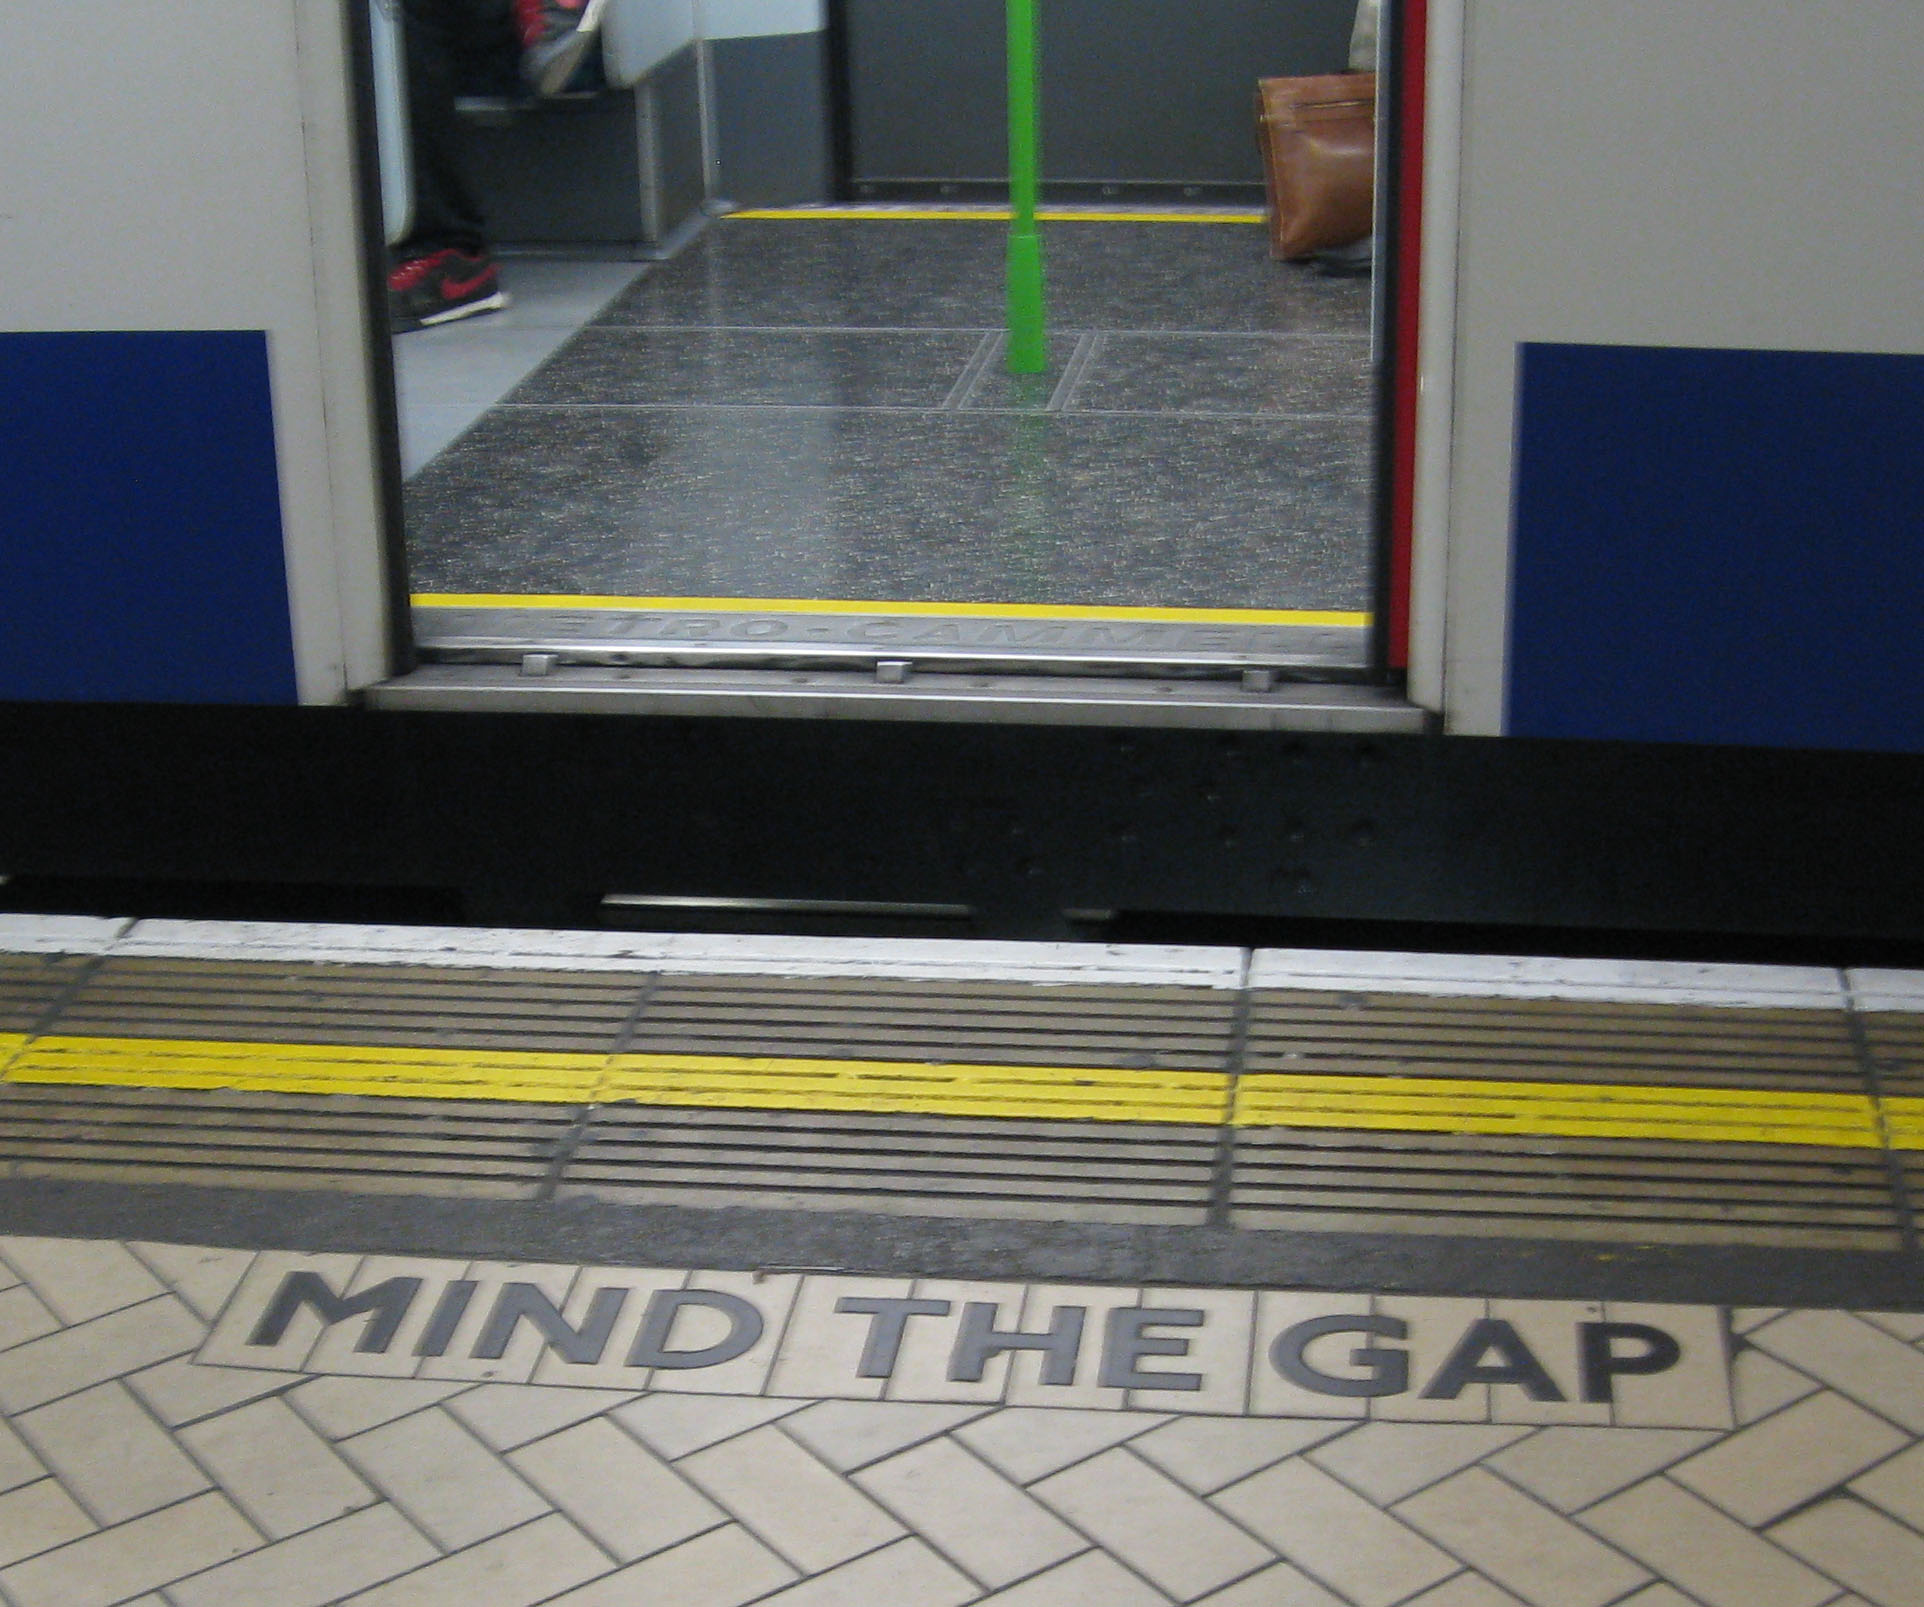 "Mind the gap" shaped tiling on the District line platform at Victoria station